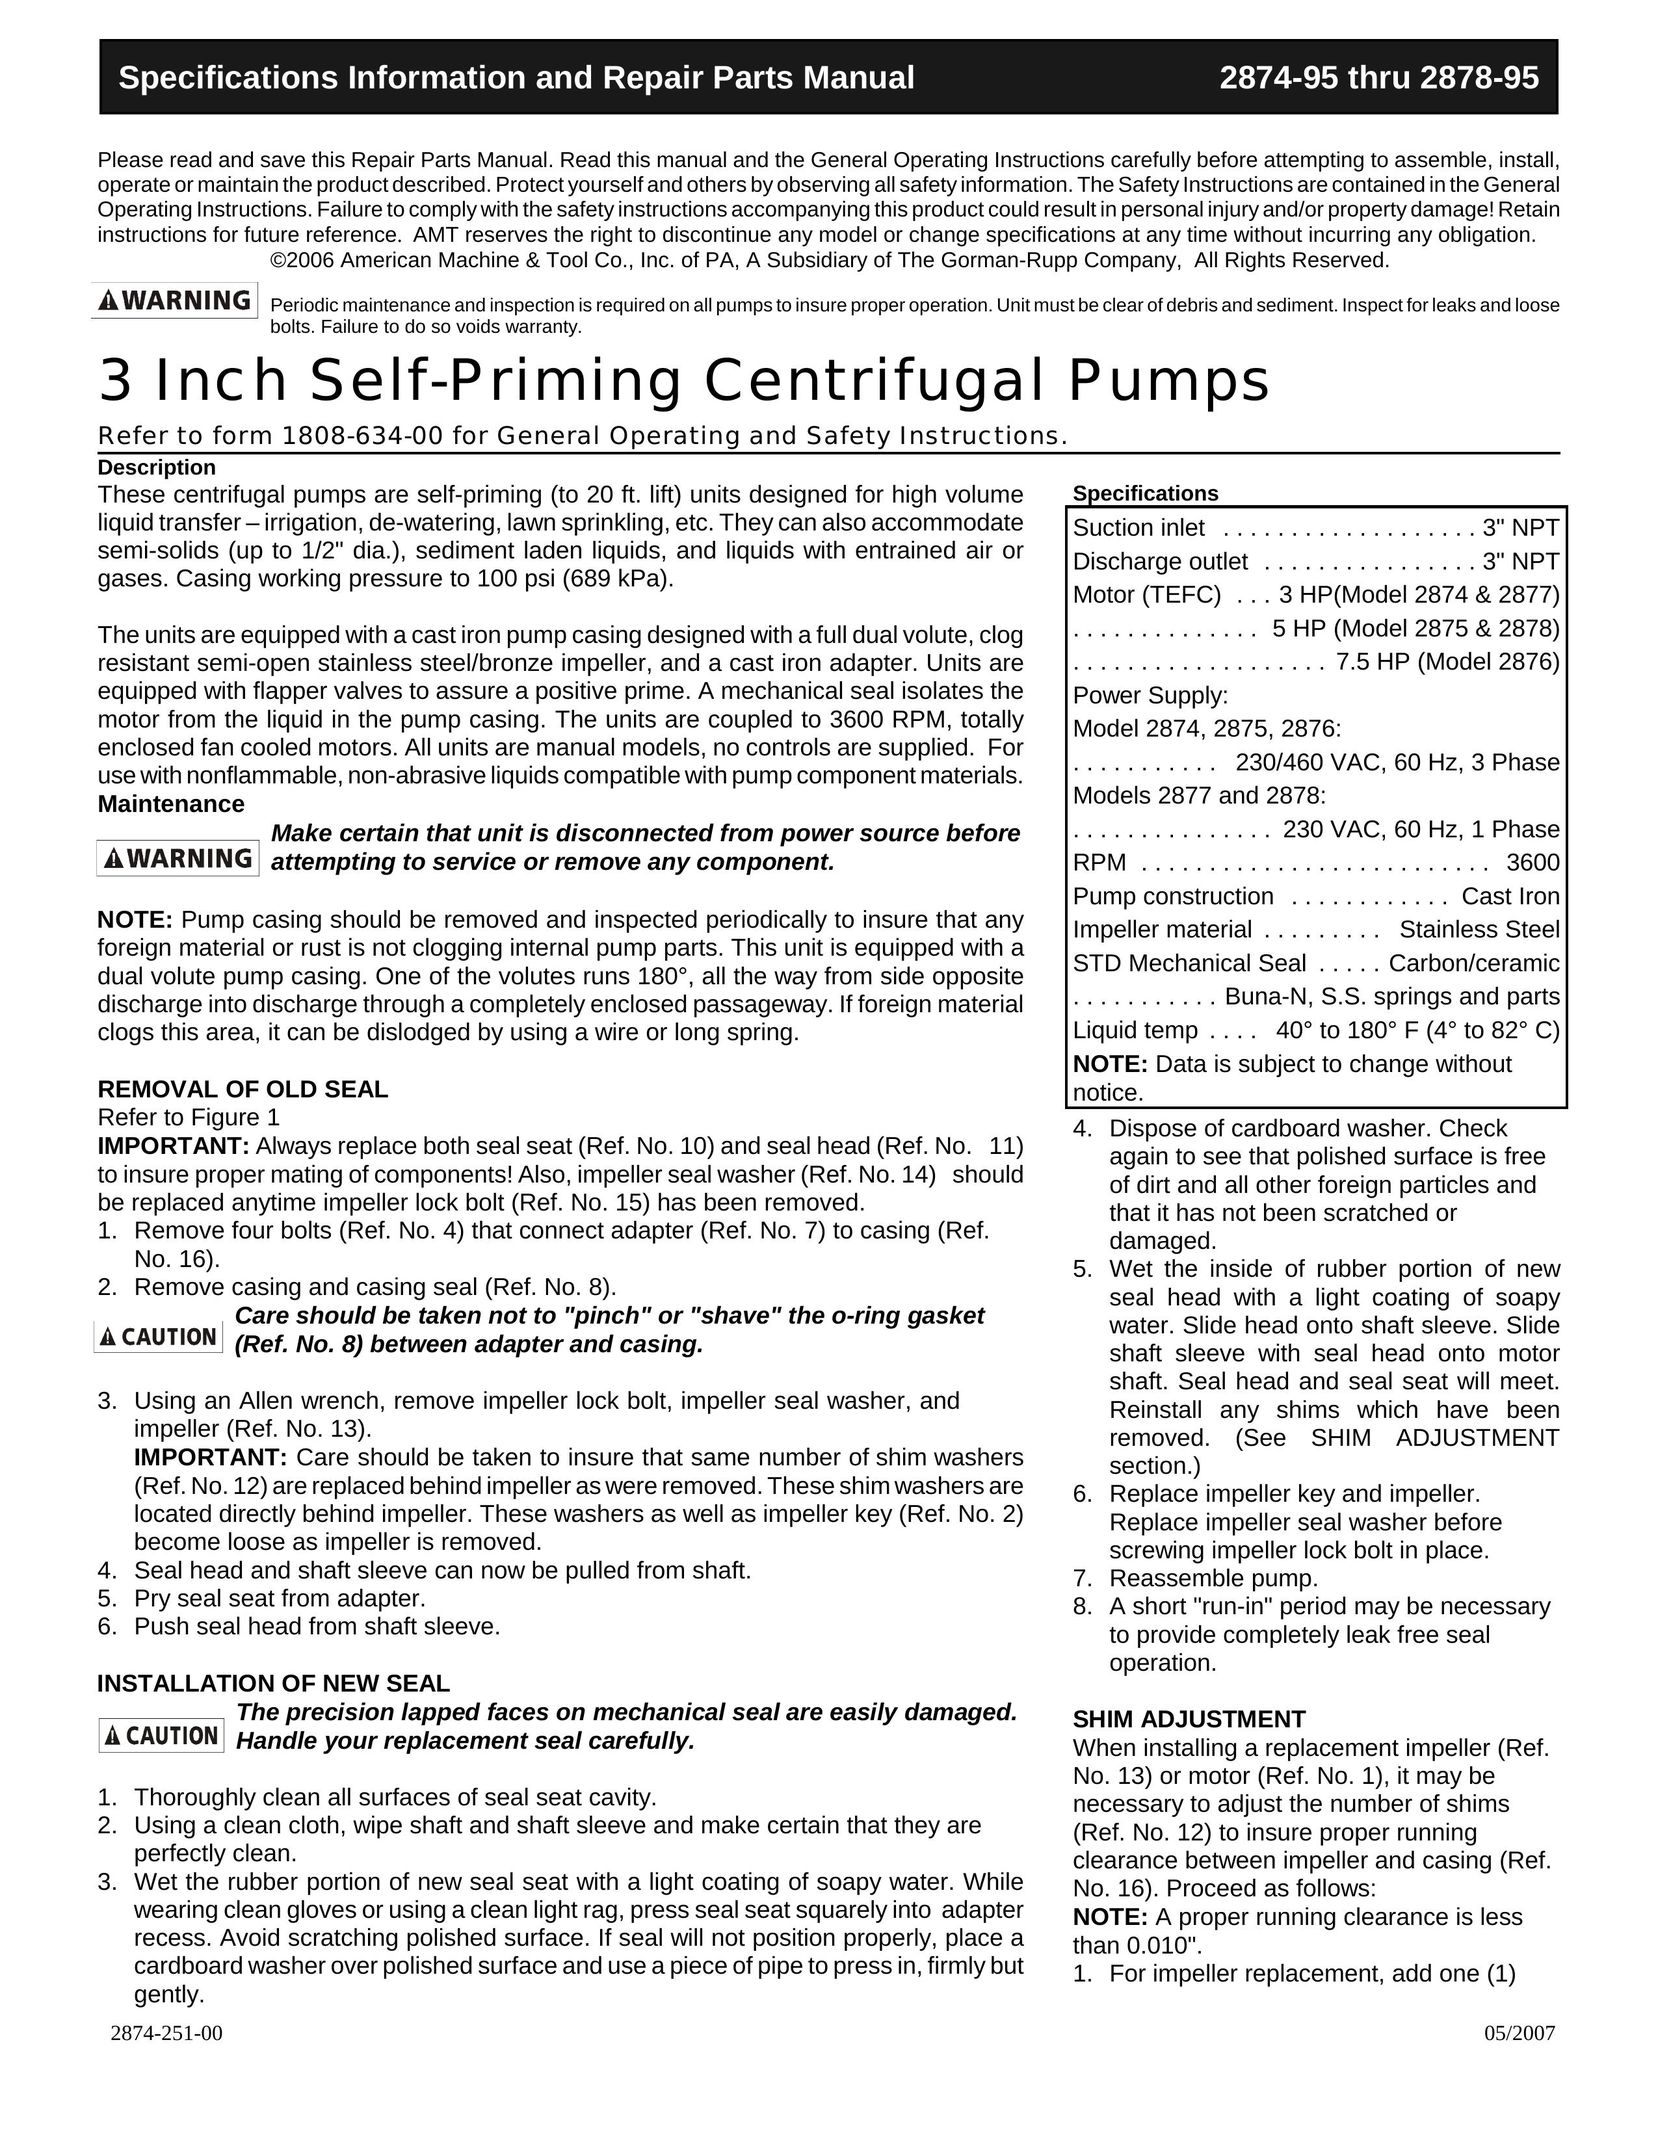 HP (Hewlett-Packard) 2876 Water Pump User Manual